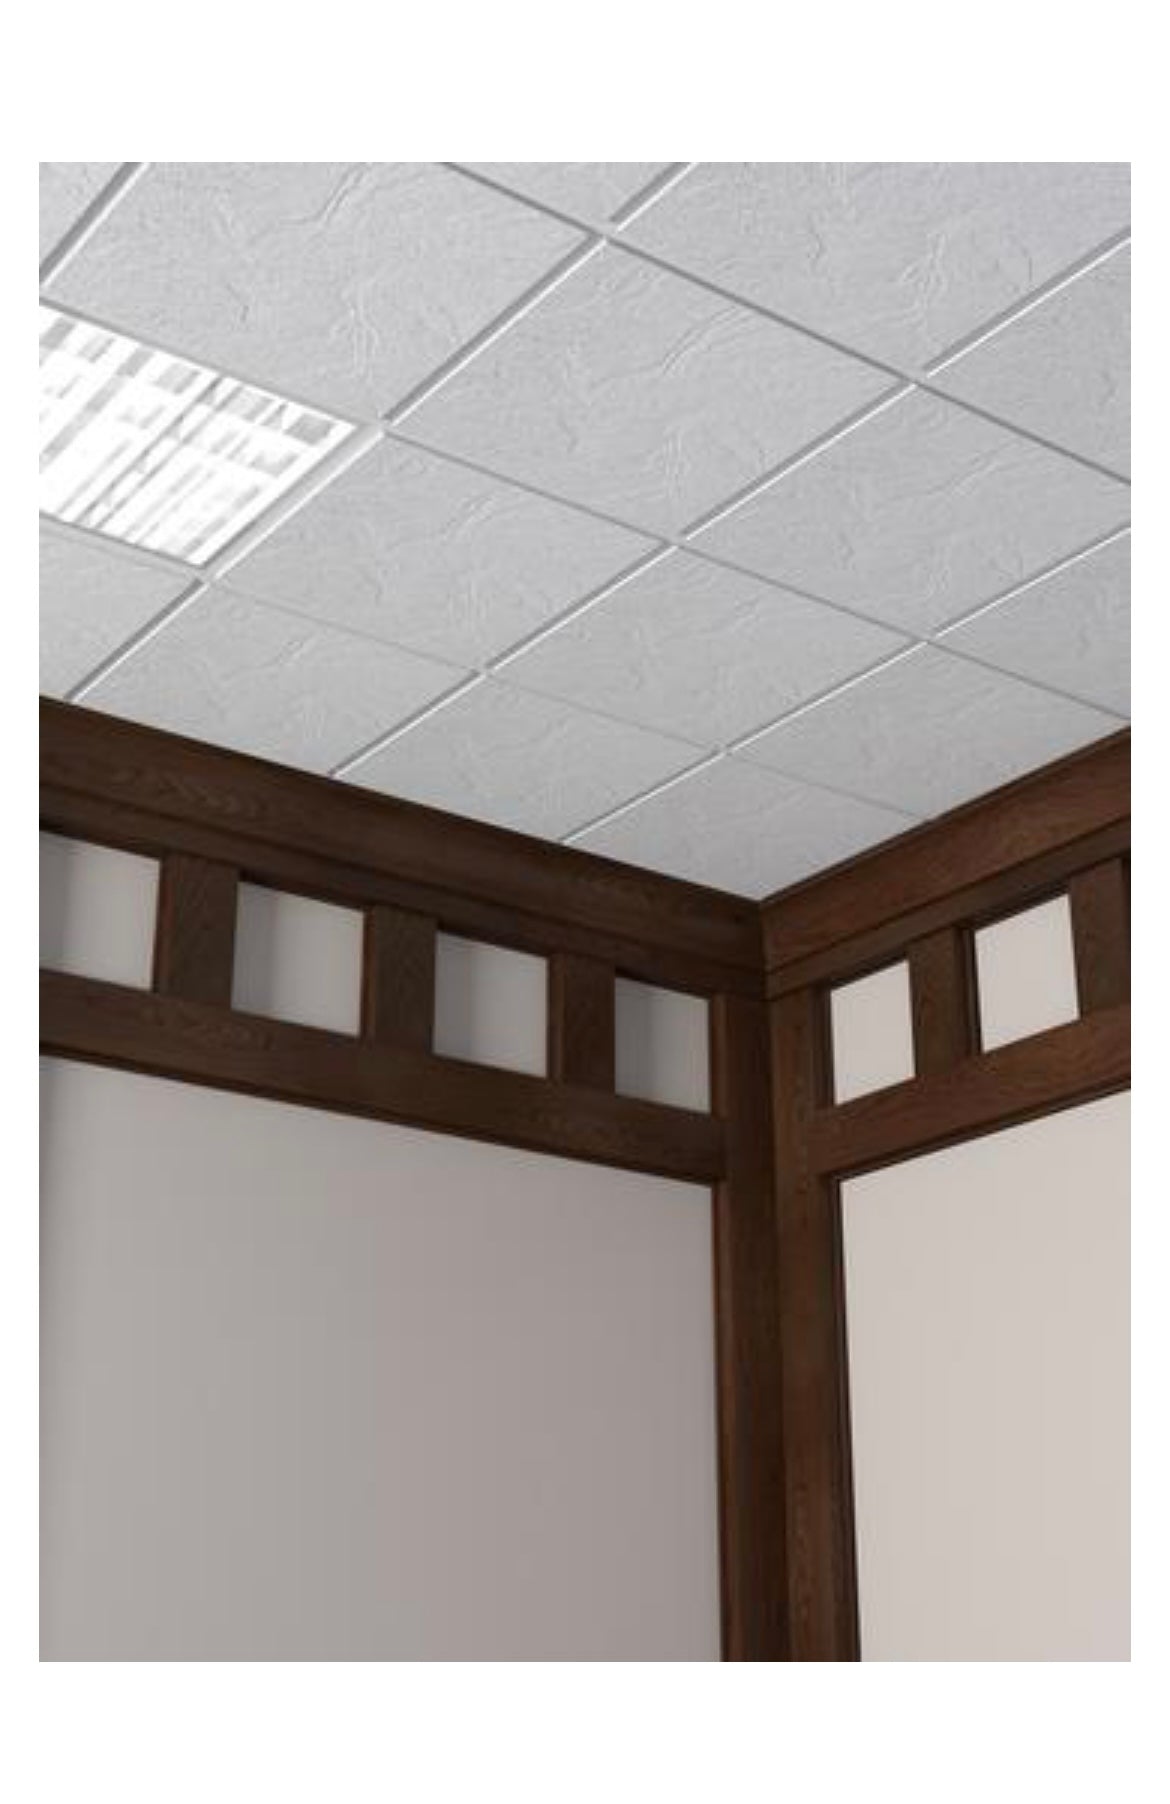 White Acoustical Drop Ceiling Tile